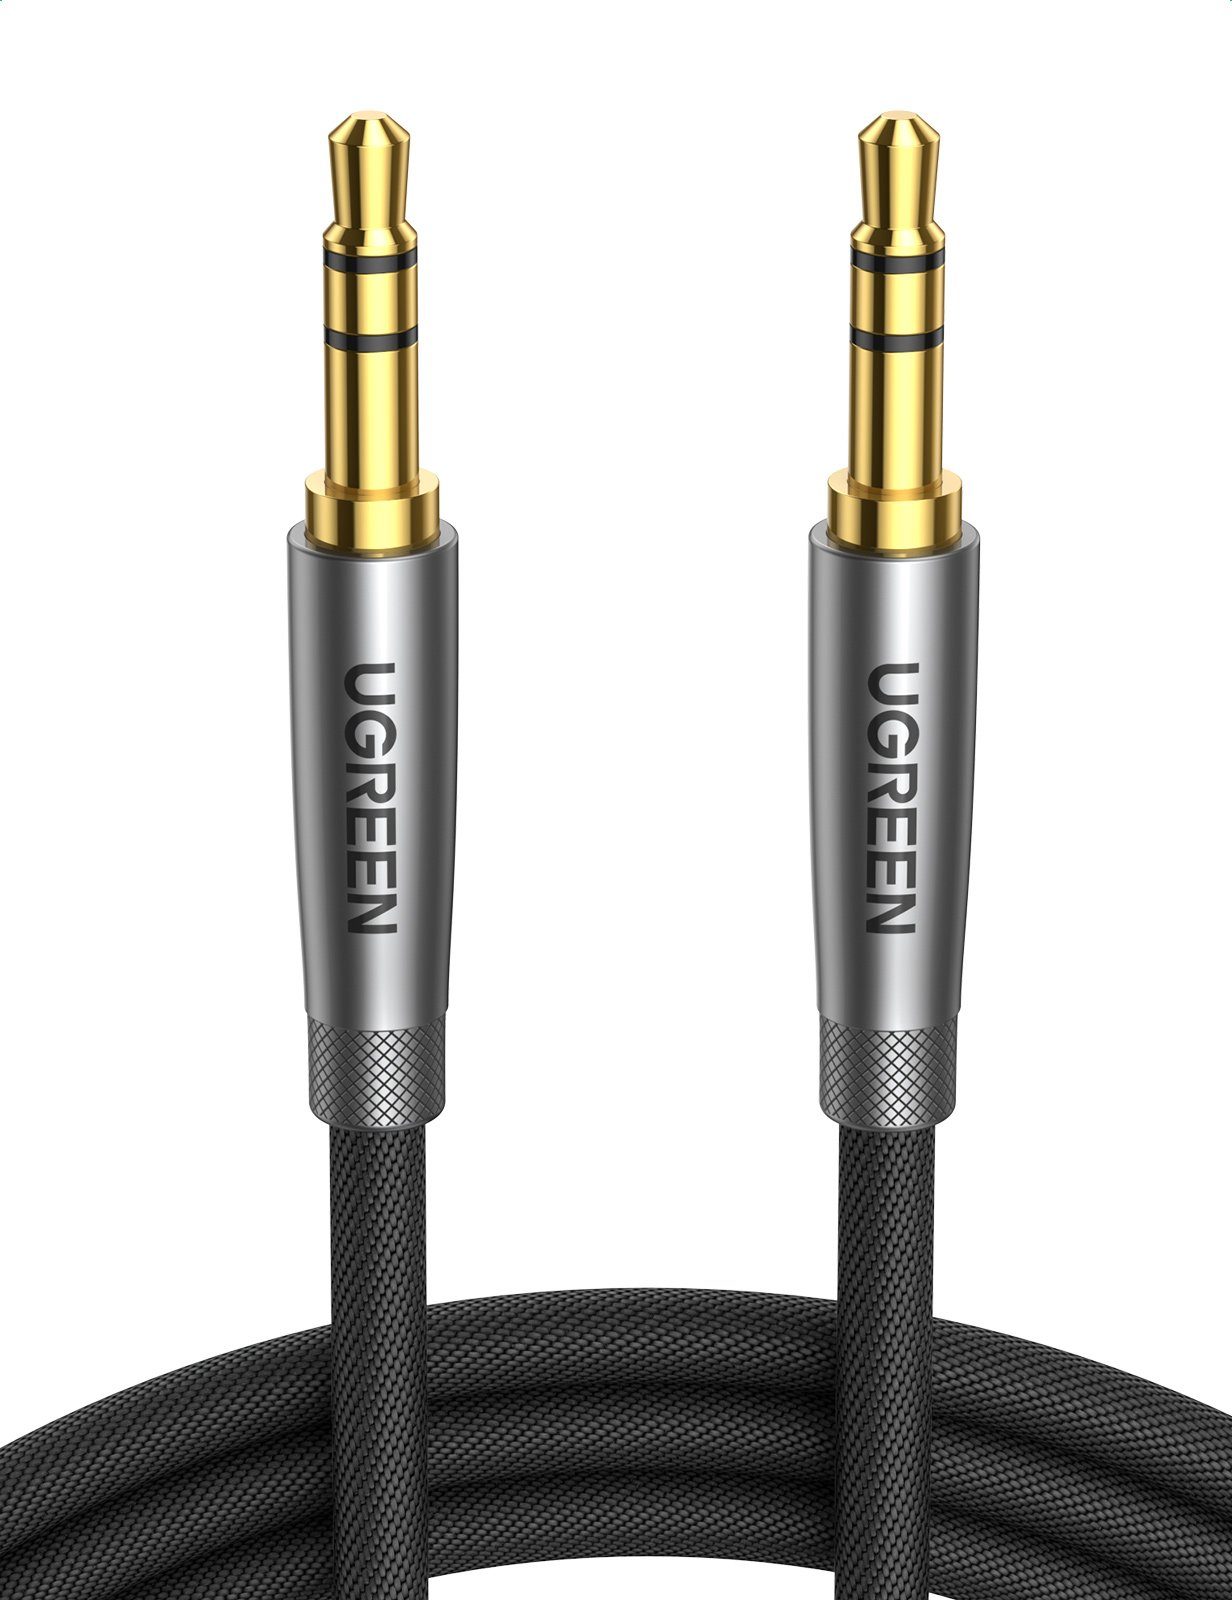 UGREEN Audio-Kabel, 3,5-mm-Klinke, 3,5-mm-Klinke (100 cm), Aux 3,5mm Cinch  Kabel, Klinkenkabel